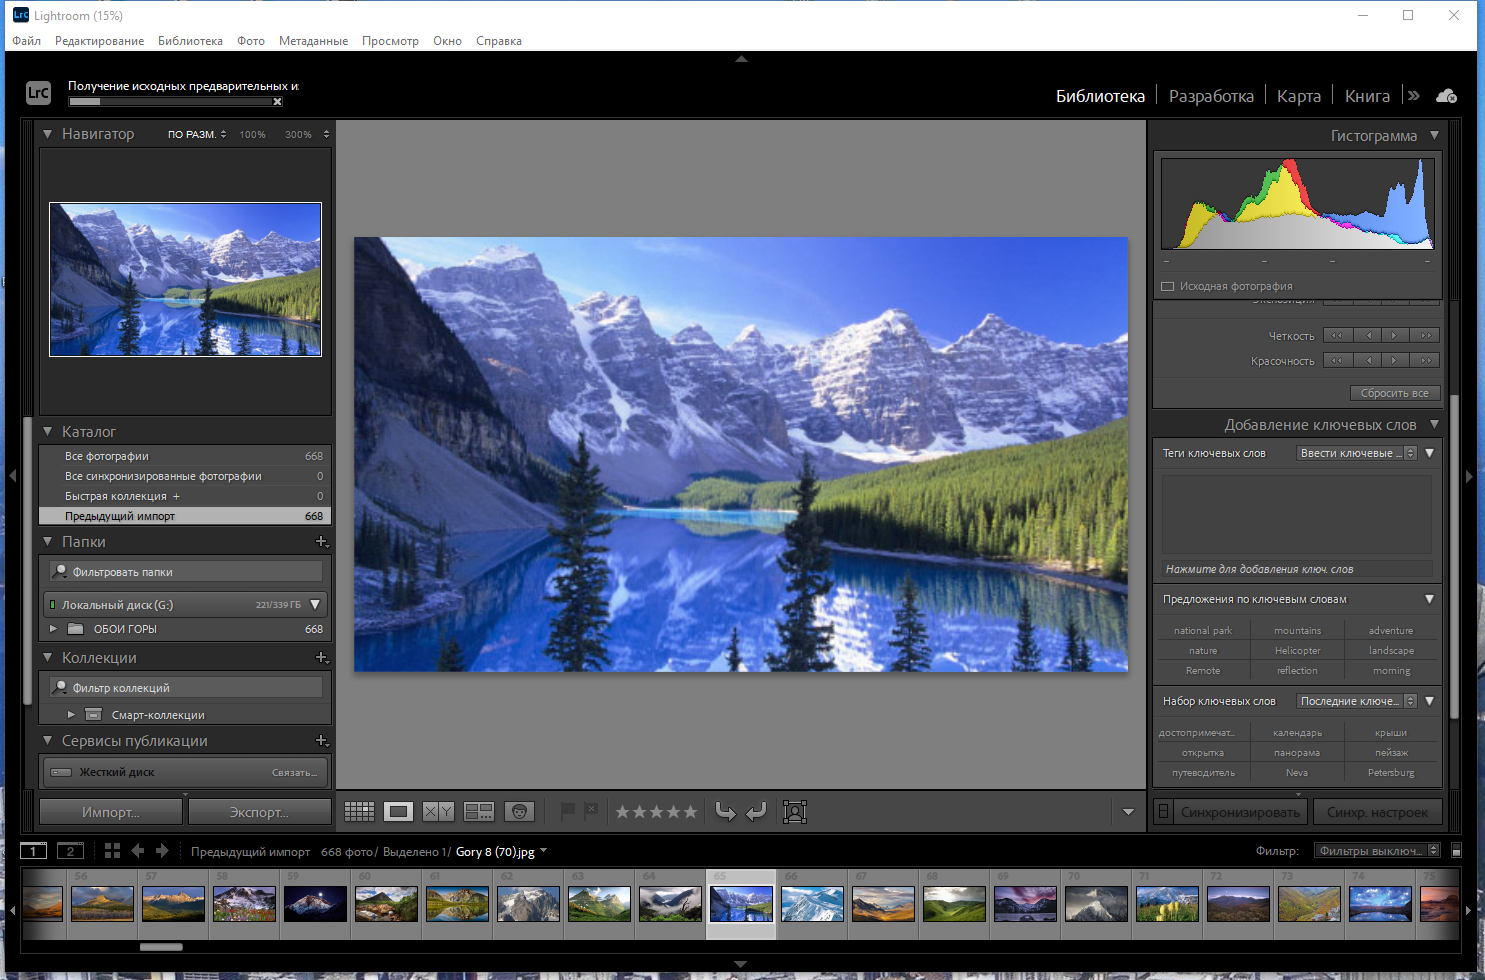 Adobe Photoshop Lightroom Classic 11.0.1.10 RePack by KpoJIuK [Multi/Ru]